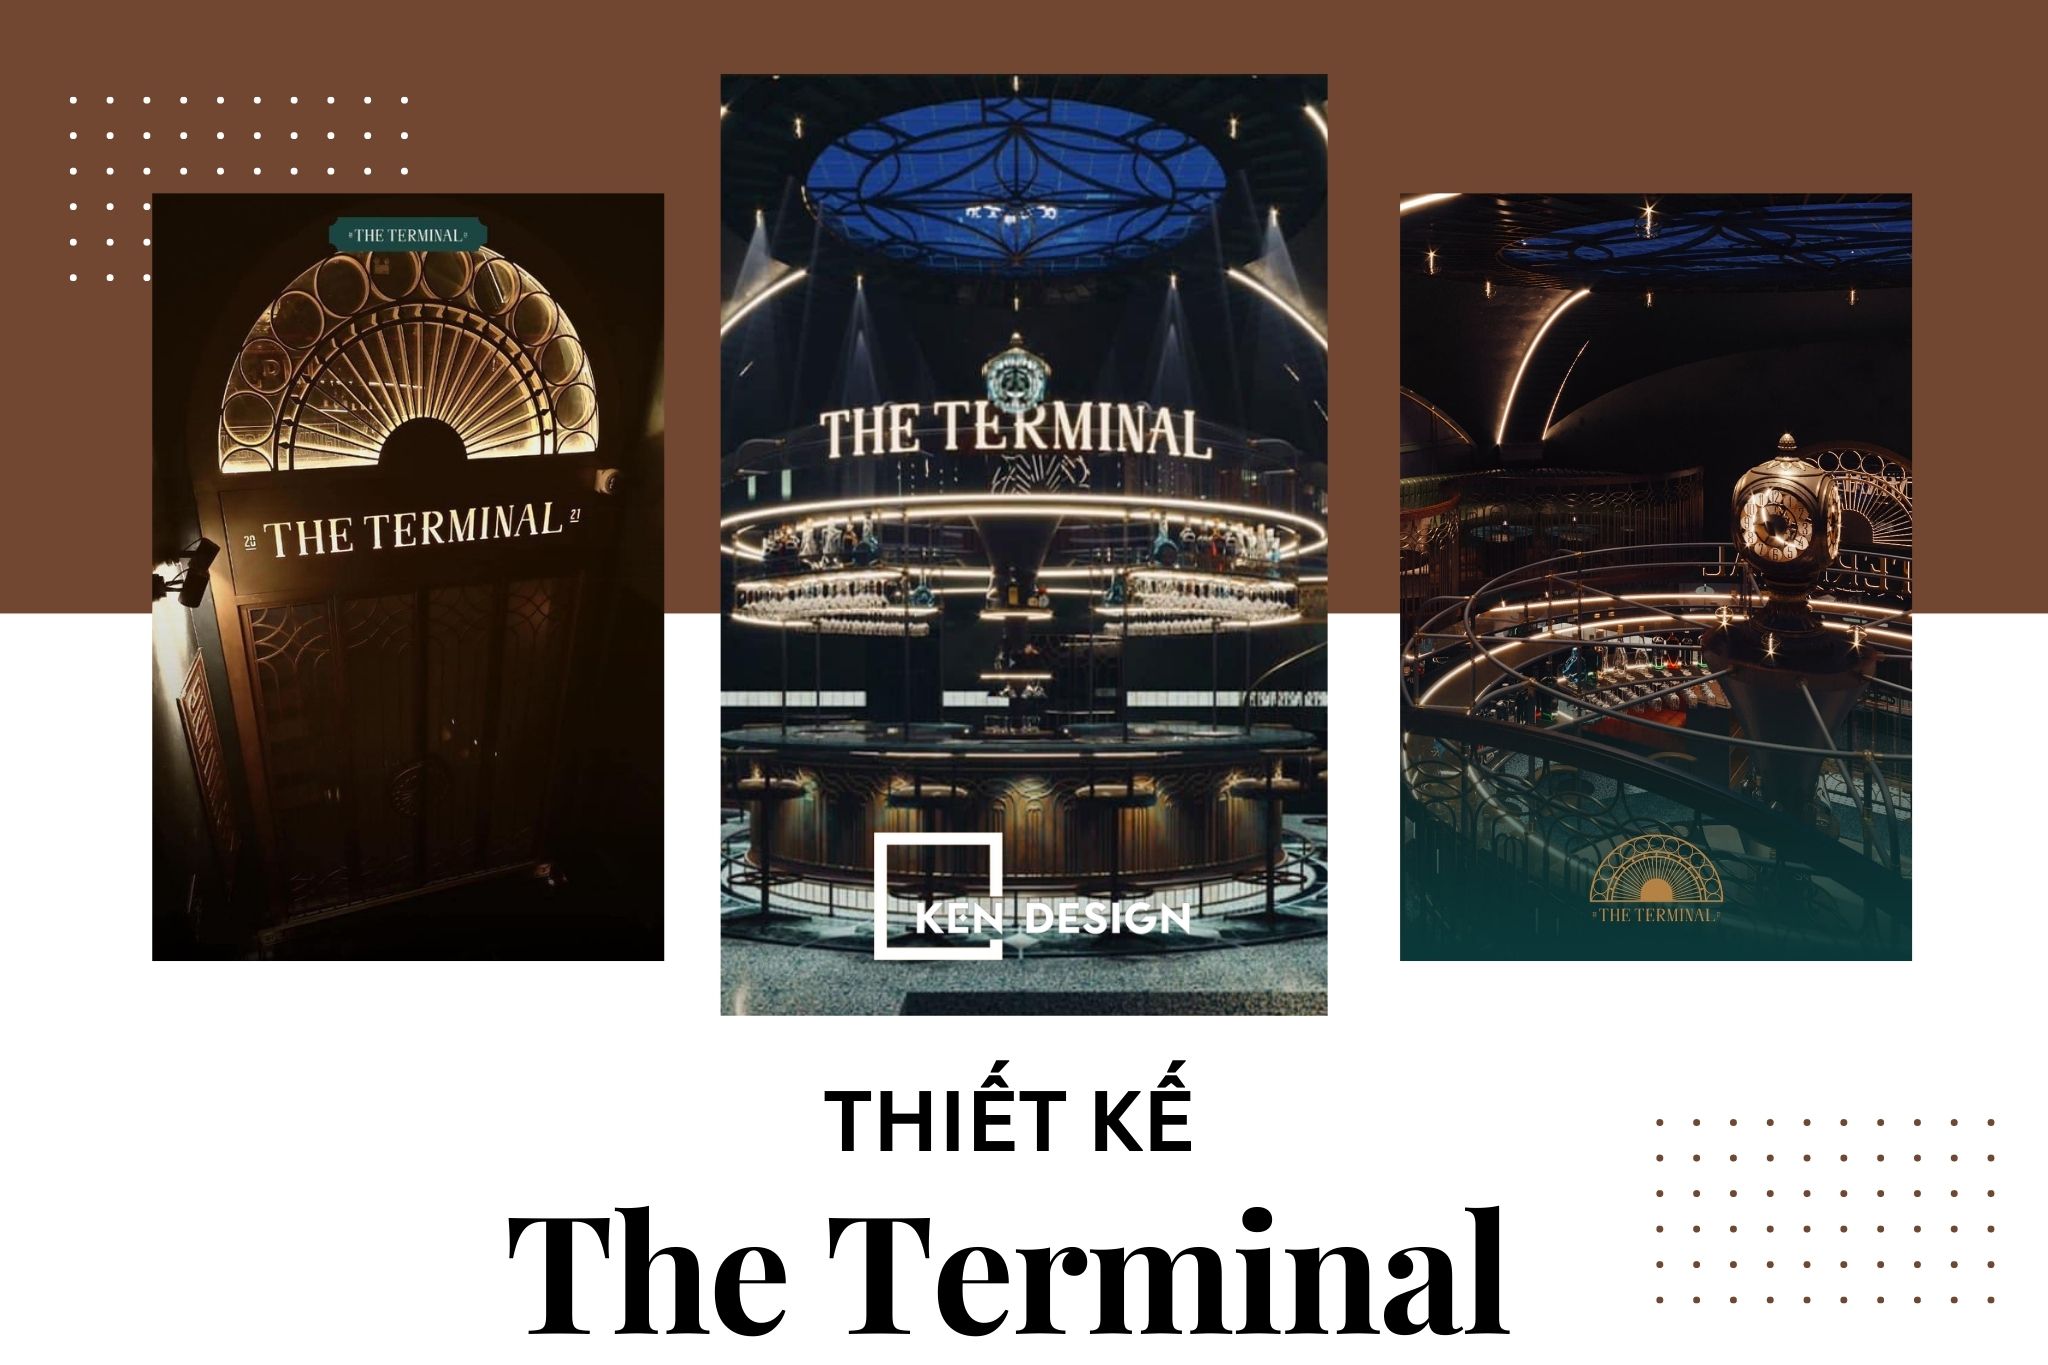 Thiết kế The Terminal - Cocktail bar phong cách ga trung tâm New York